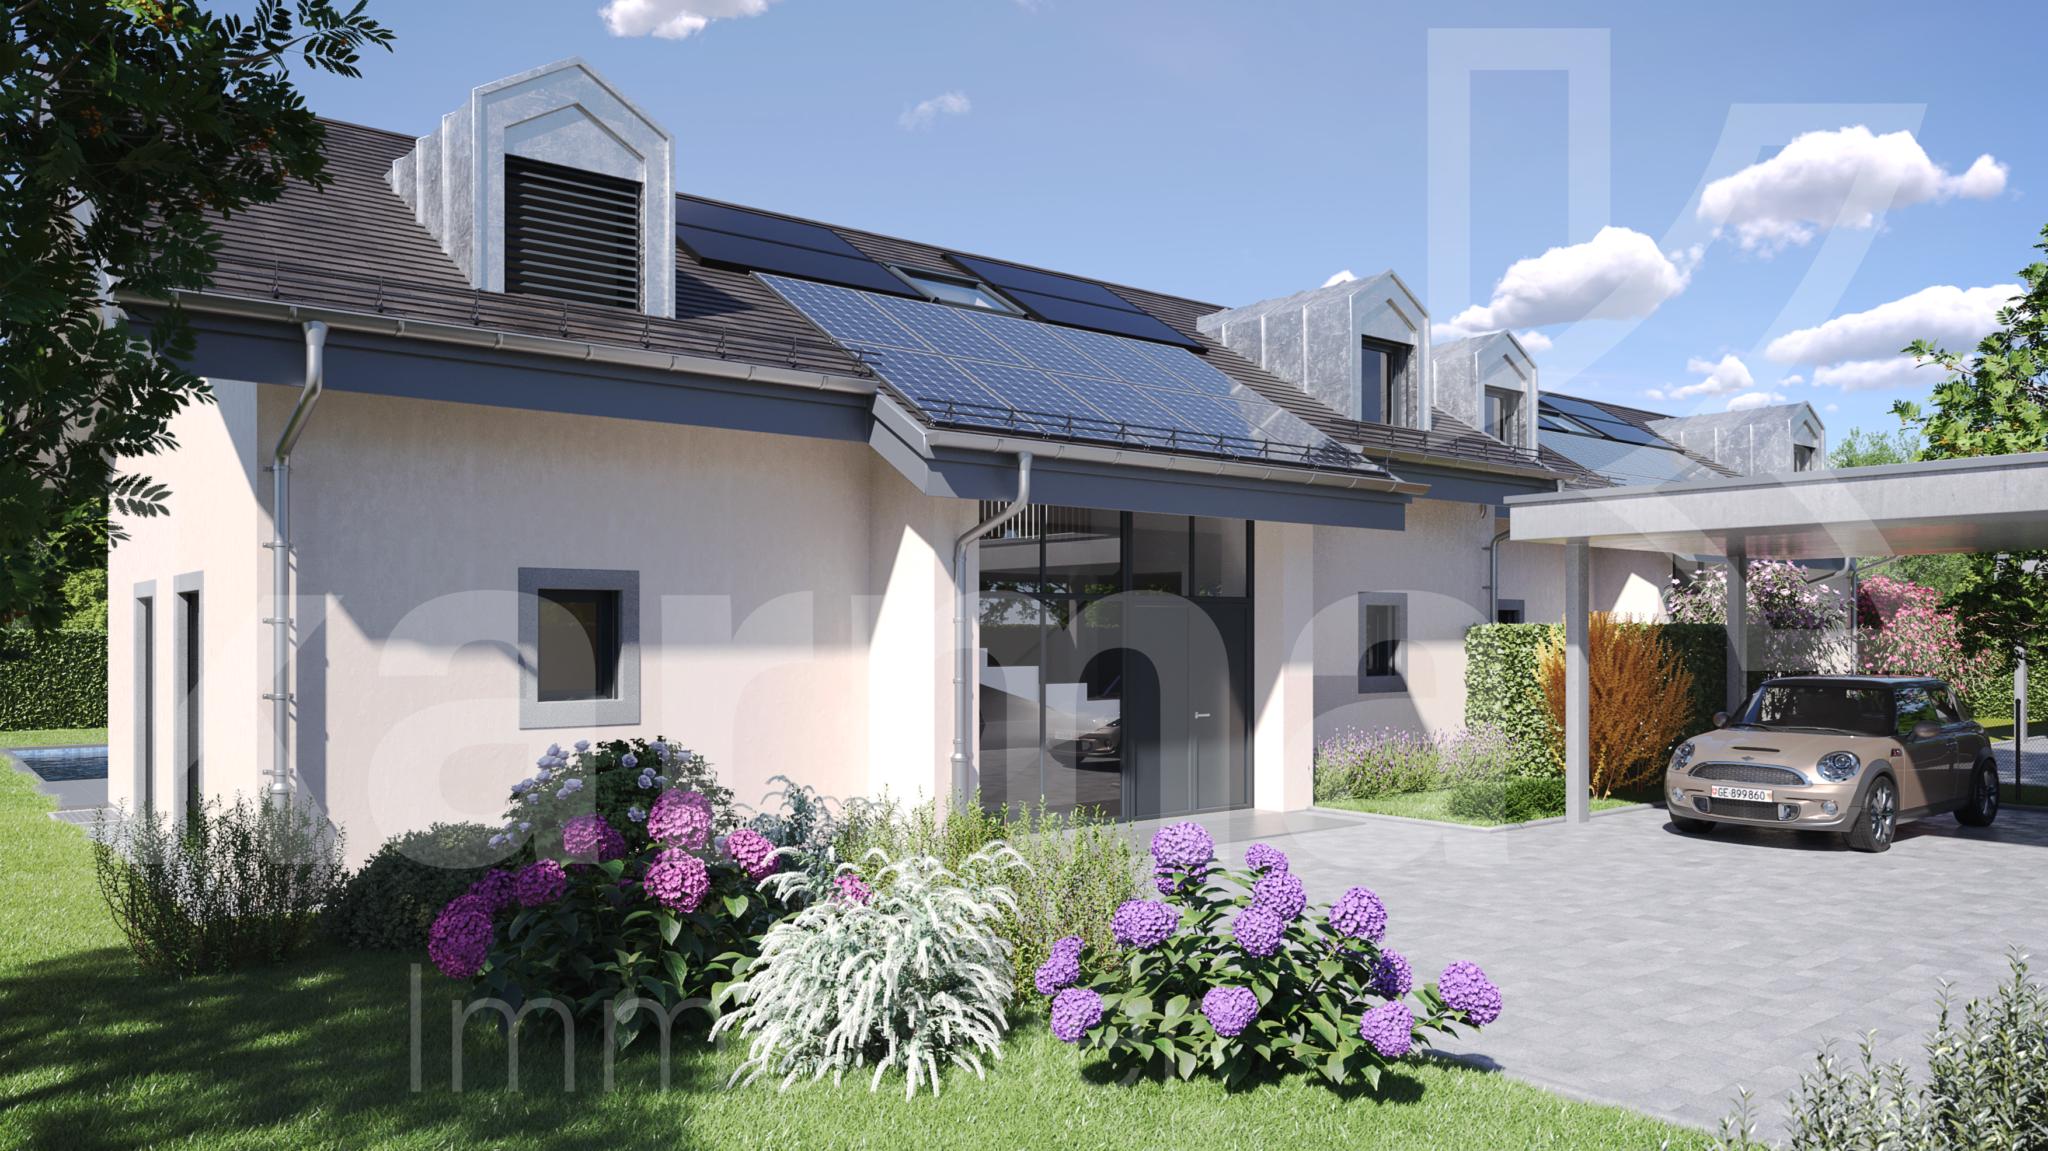 Tannay - Projet neuf de 2 villas - Une villa encore disponible